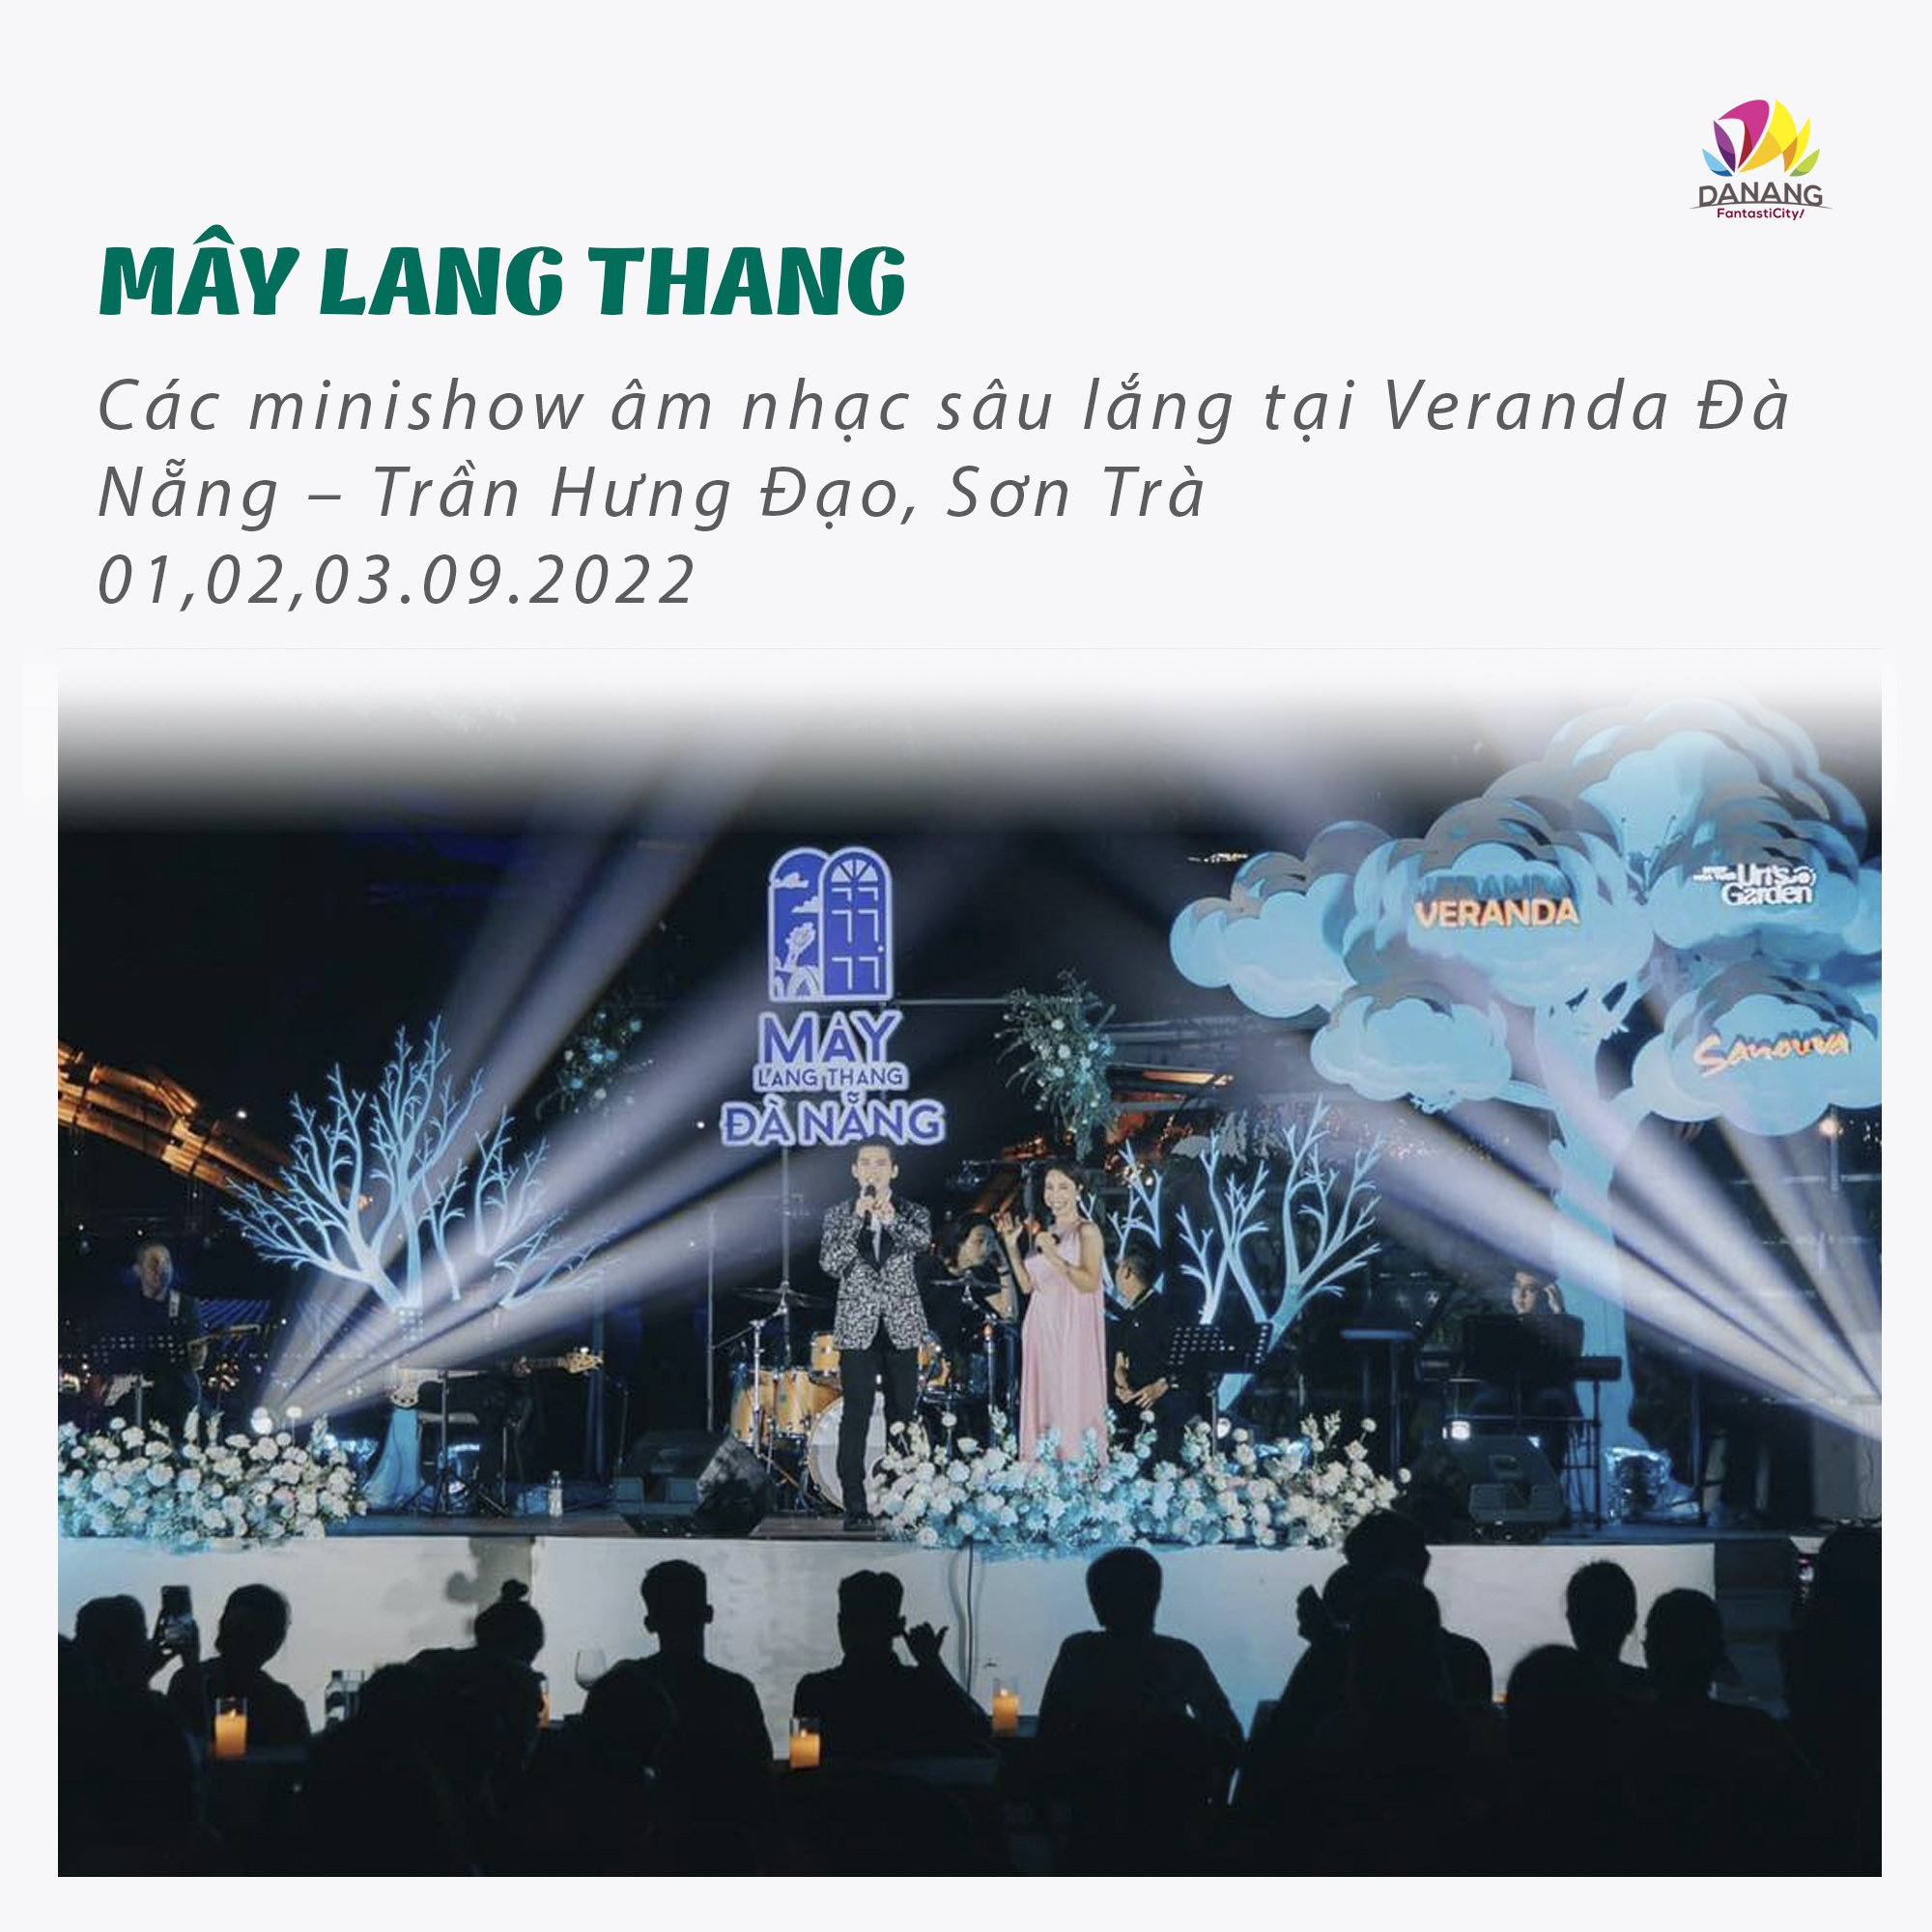 12 May Lang Thang Copy